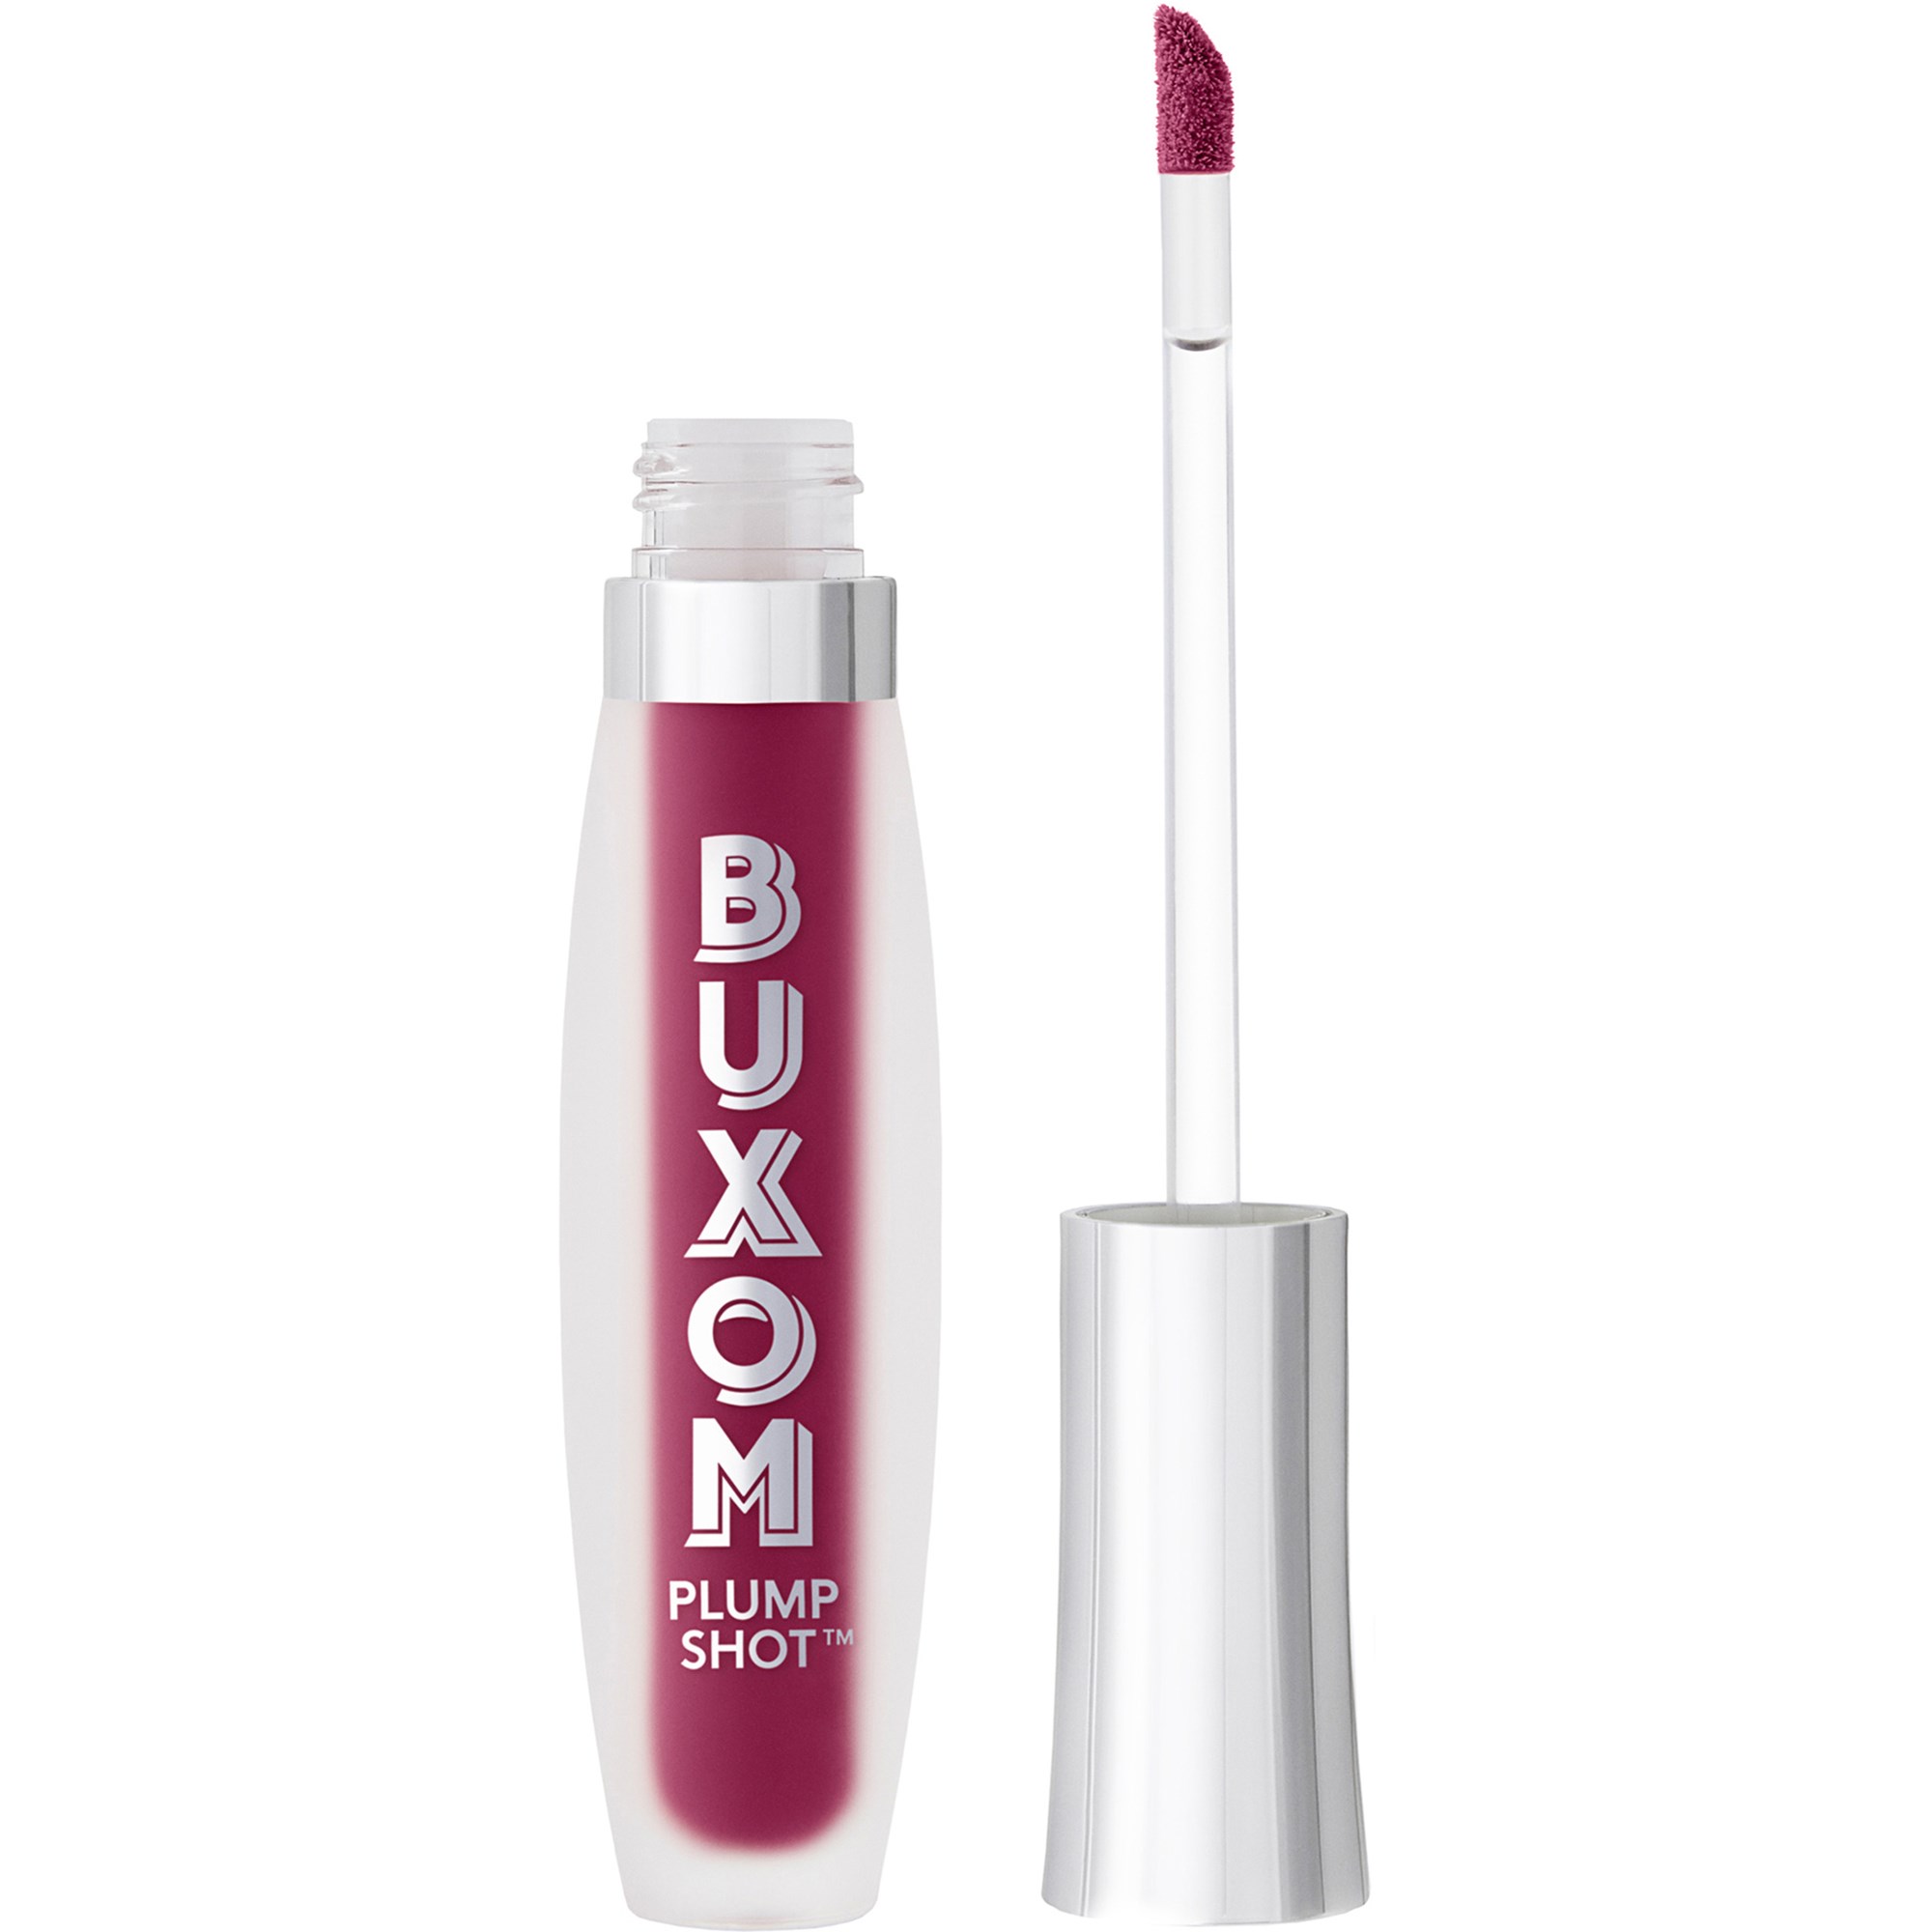 Bilde av Buxom Plump Shot™ Collagen-infused Lip Serum Plum Power